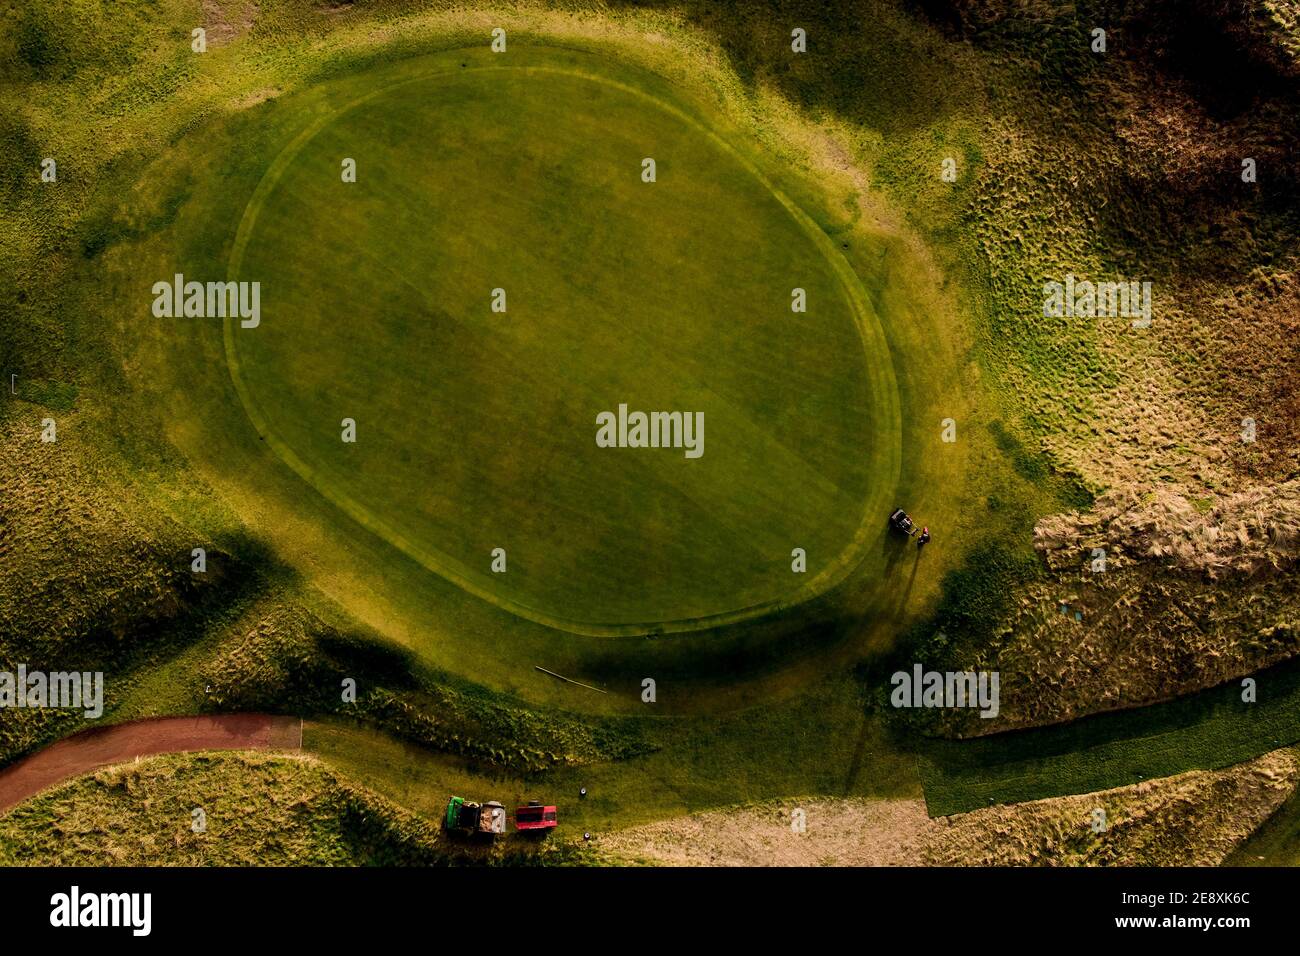 Wirral, ein Greenskeeper im Wallasey Golf Club, mäht das Grün beim Lockdown am 1. Februar 2021. Golfschläger in ganz Großbritannien bleiben unter strengem Stockfoto